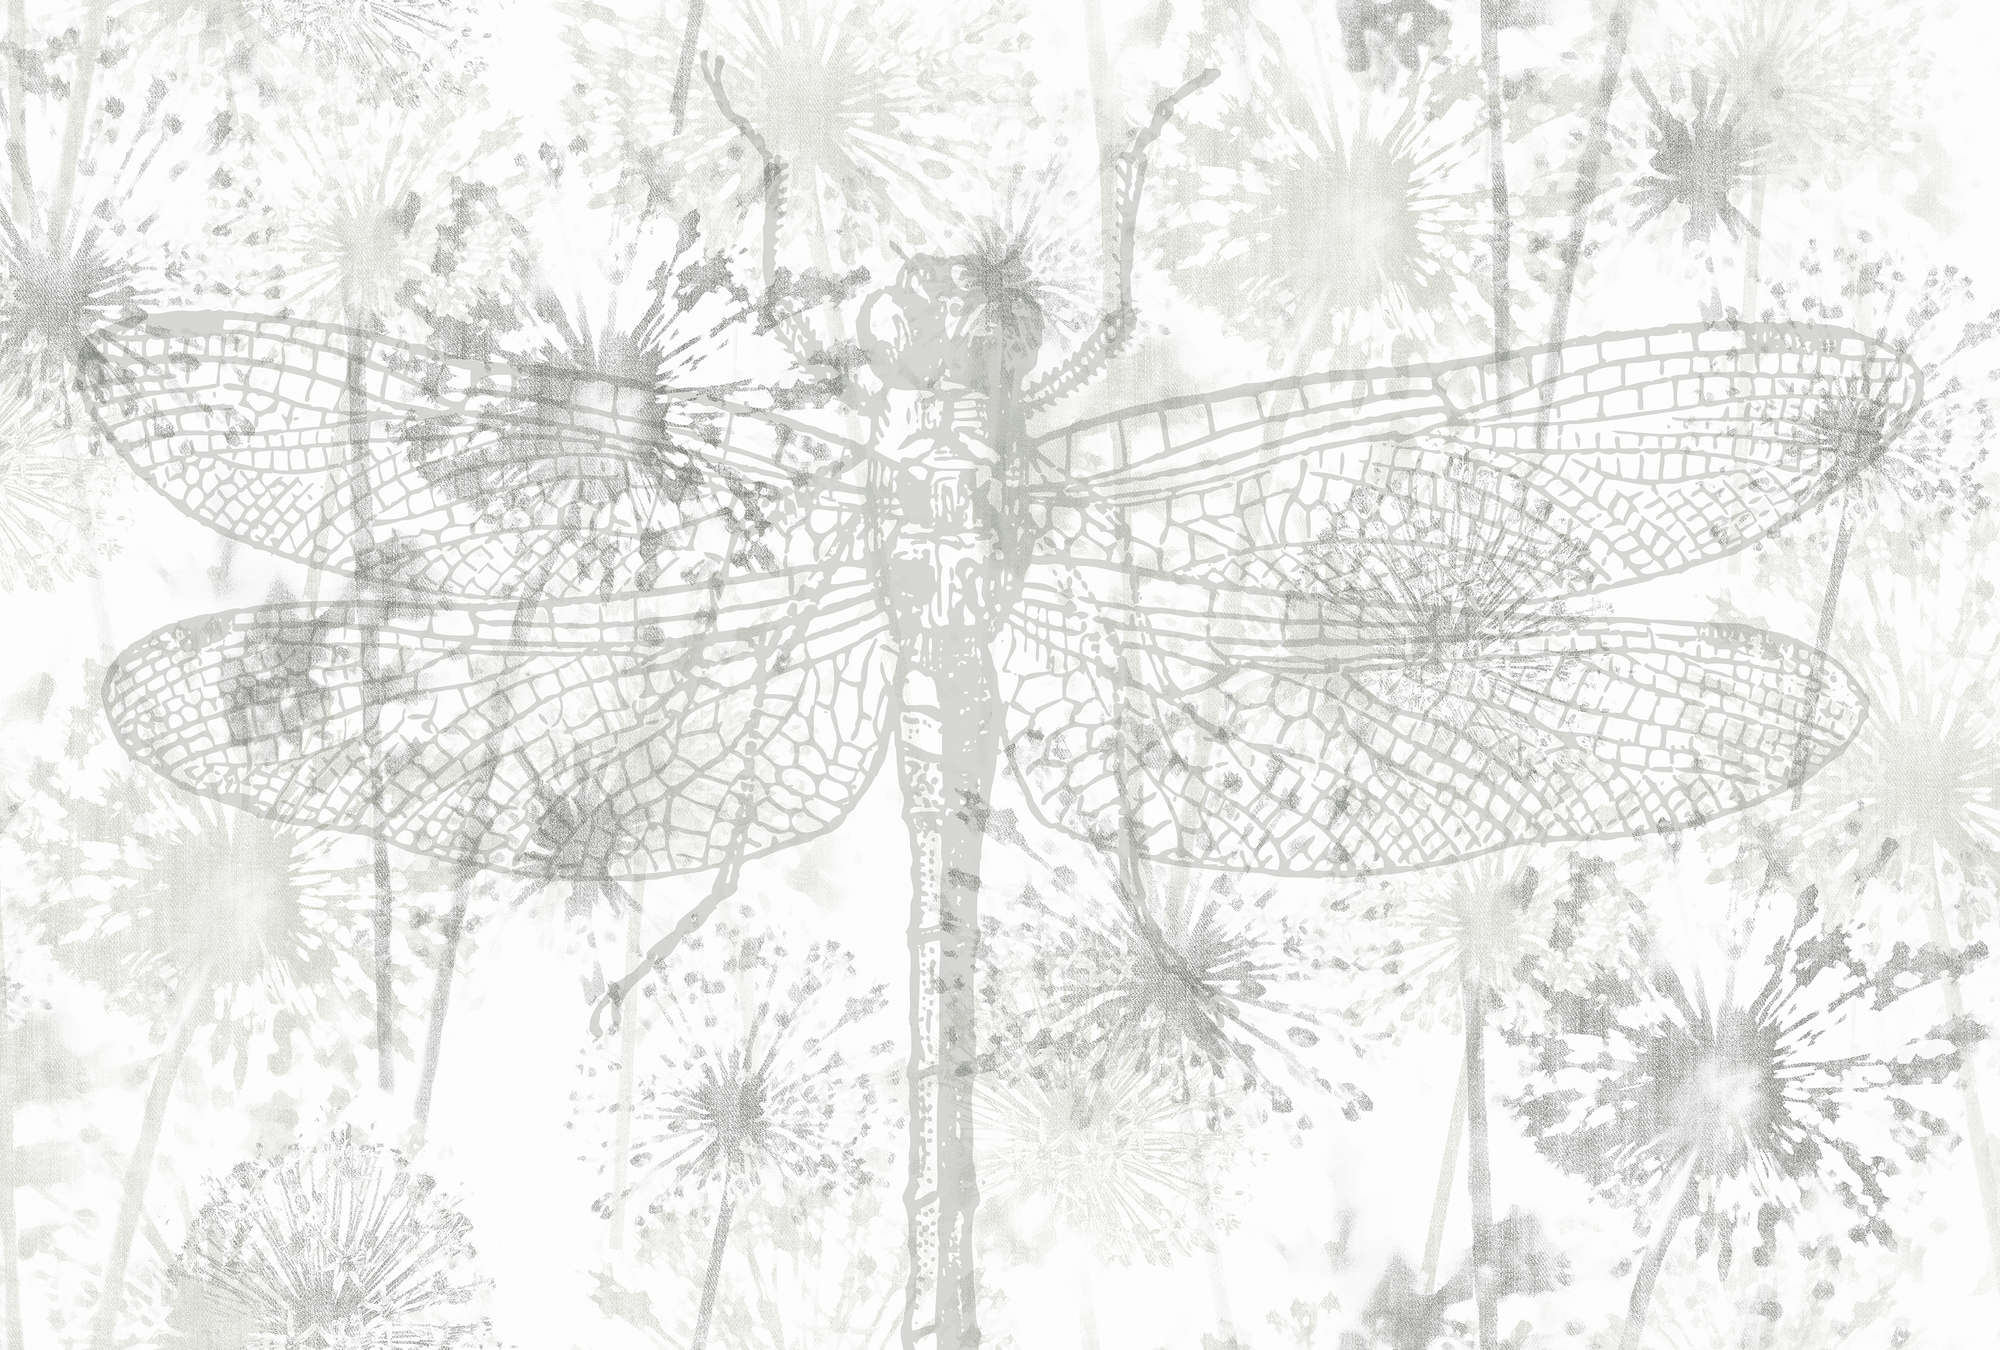             Fototapete Blüten & Libellen mit natürlichem Muster – Grau, Weiß
        